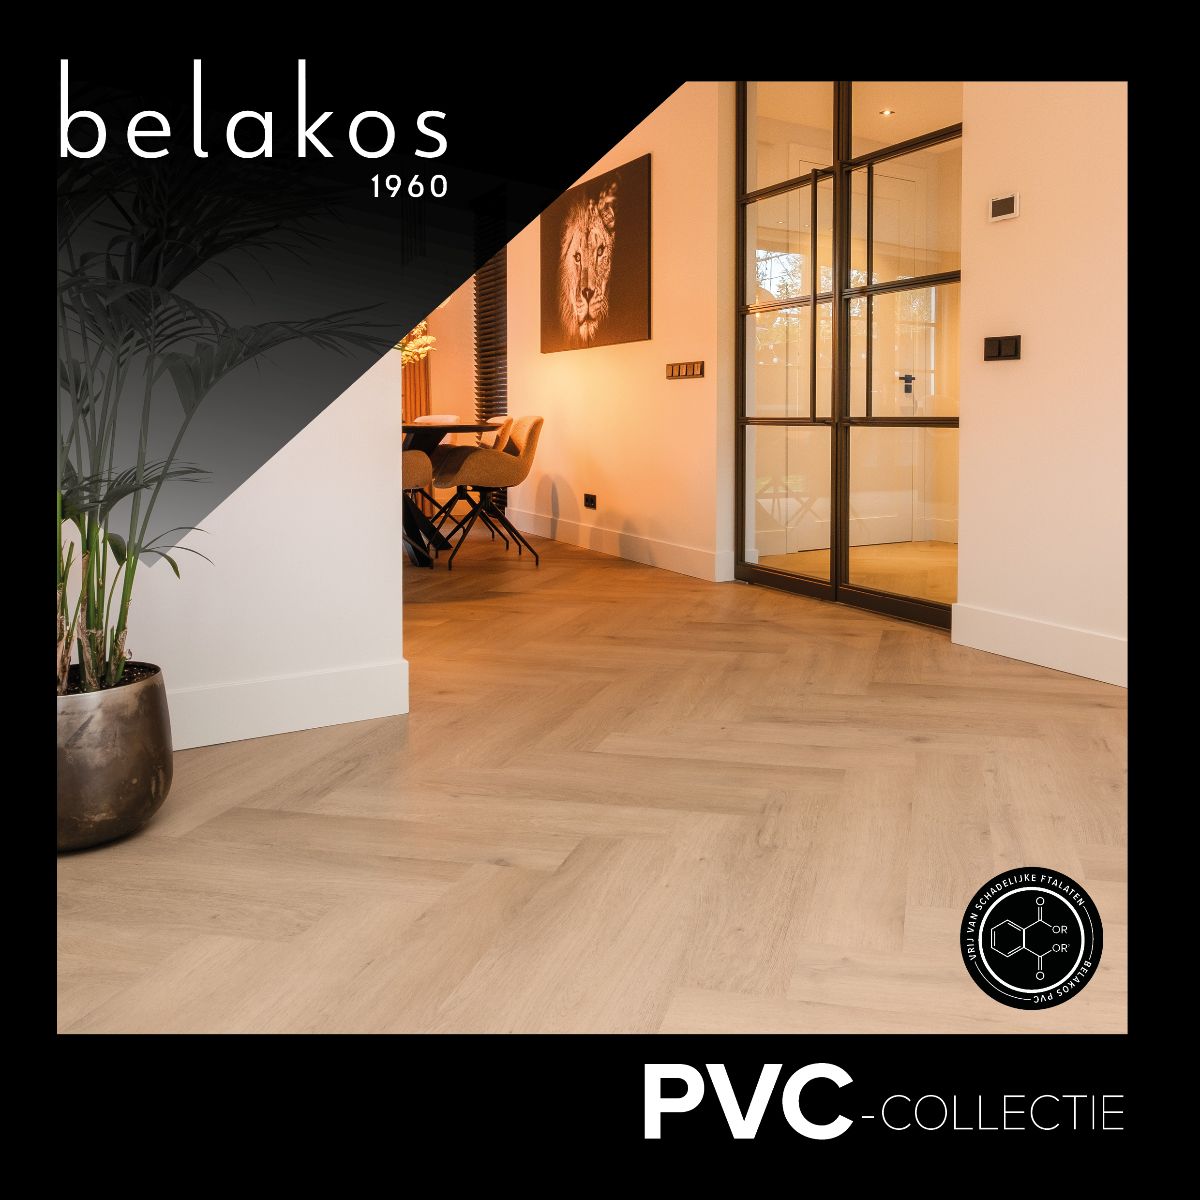 Foto : Nieuwe Belakos pvc kwaliteiten: Terreno en Monastro